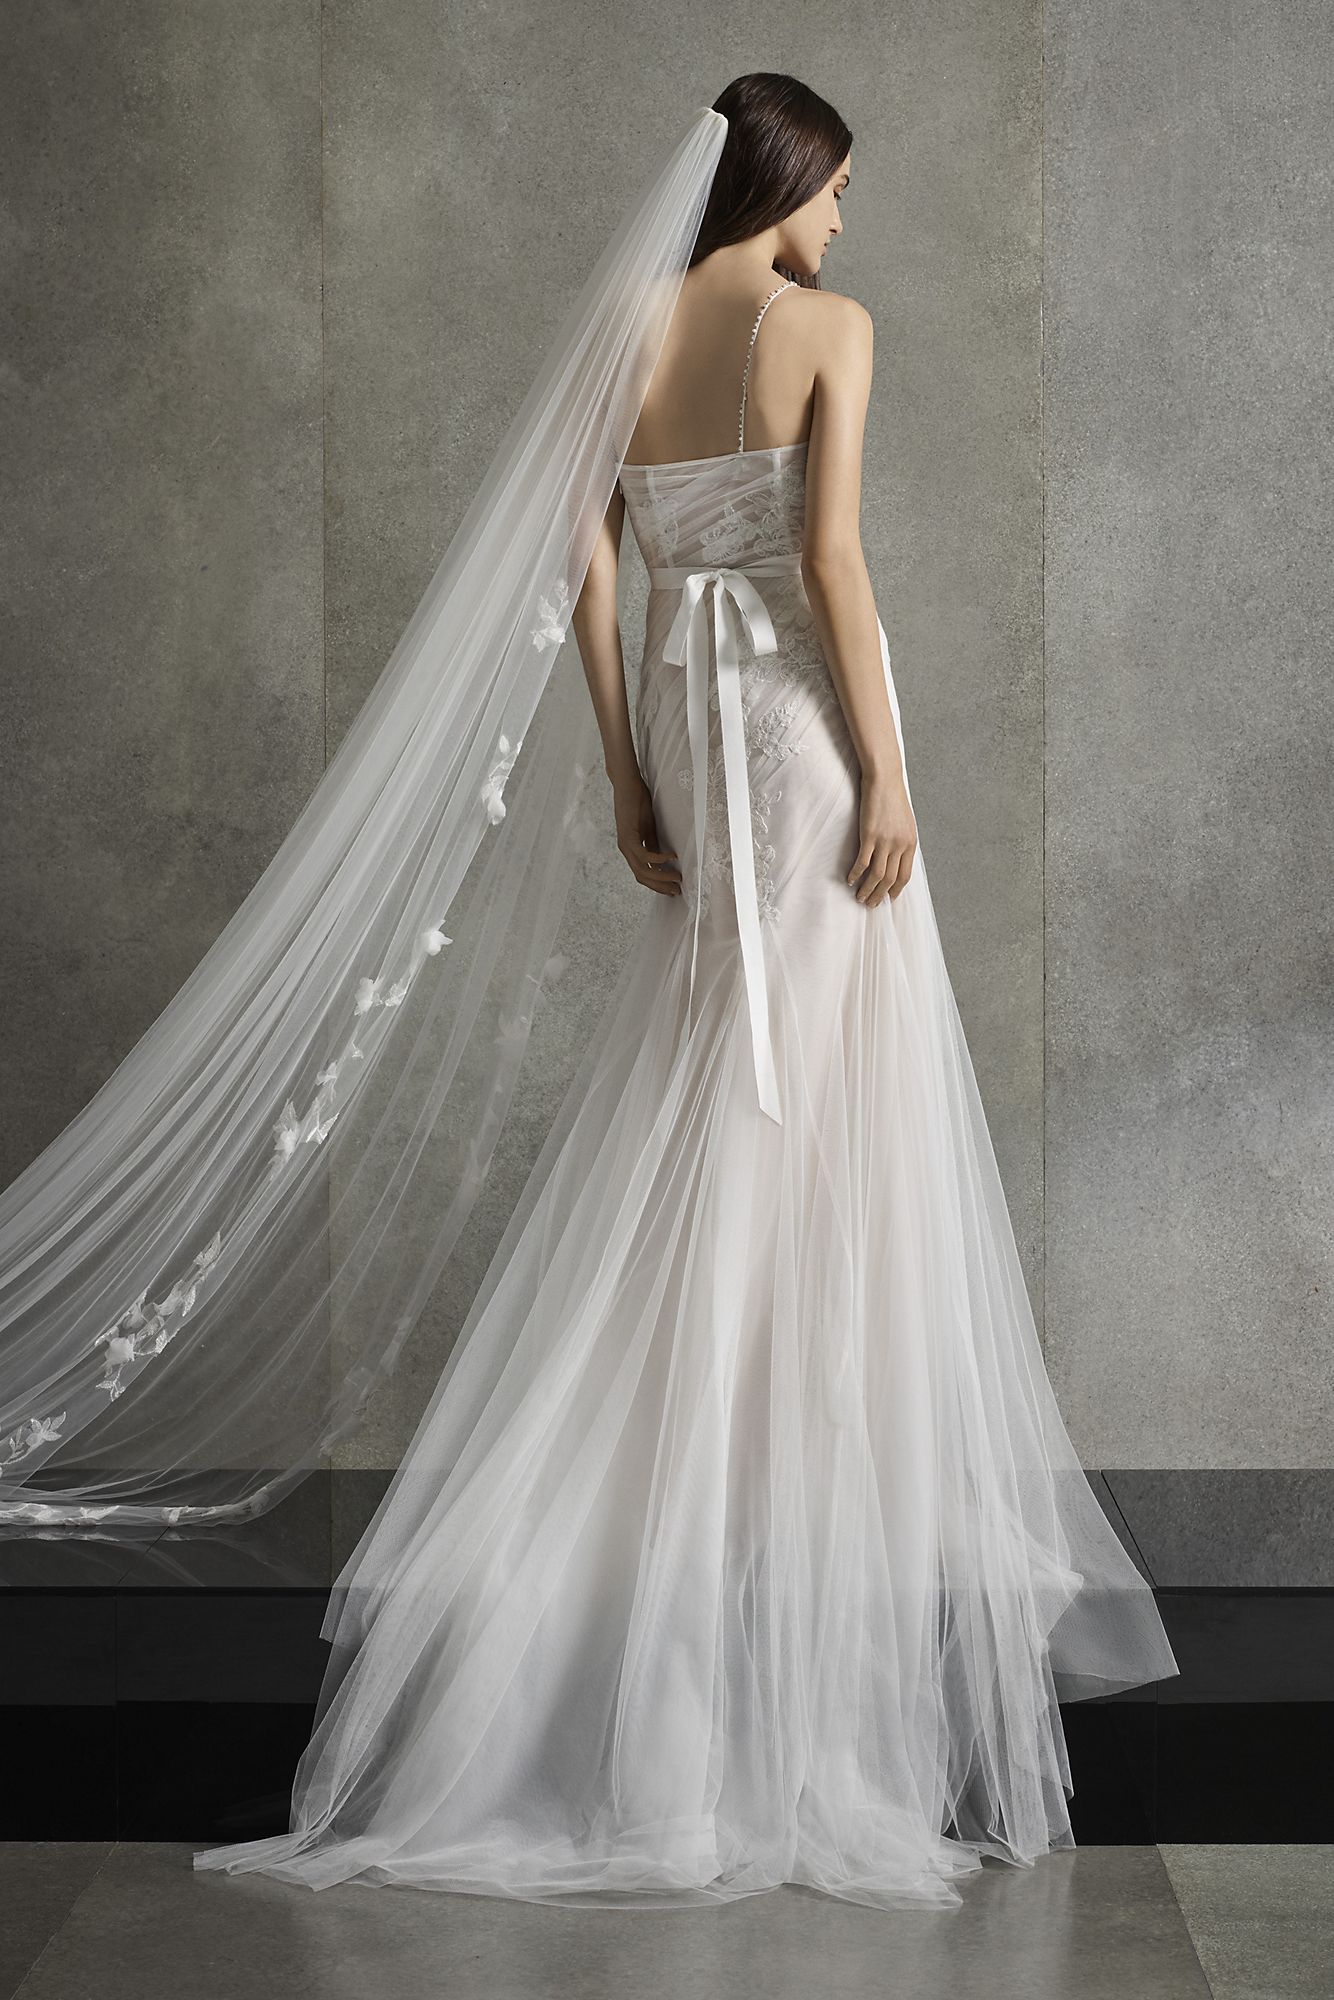  Asymmetric Petite Wedding Dress 7VW351553